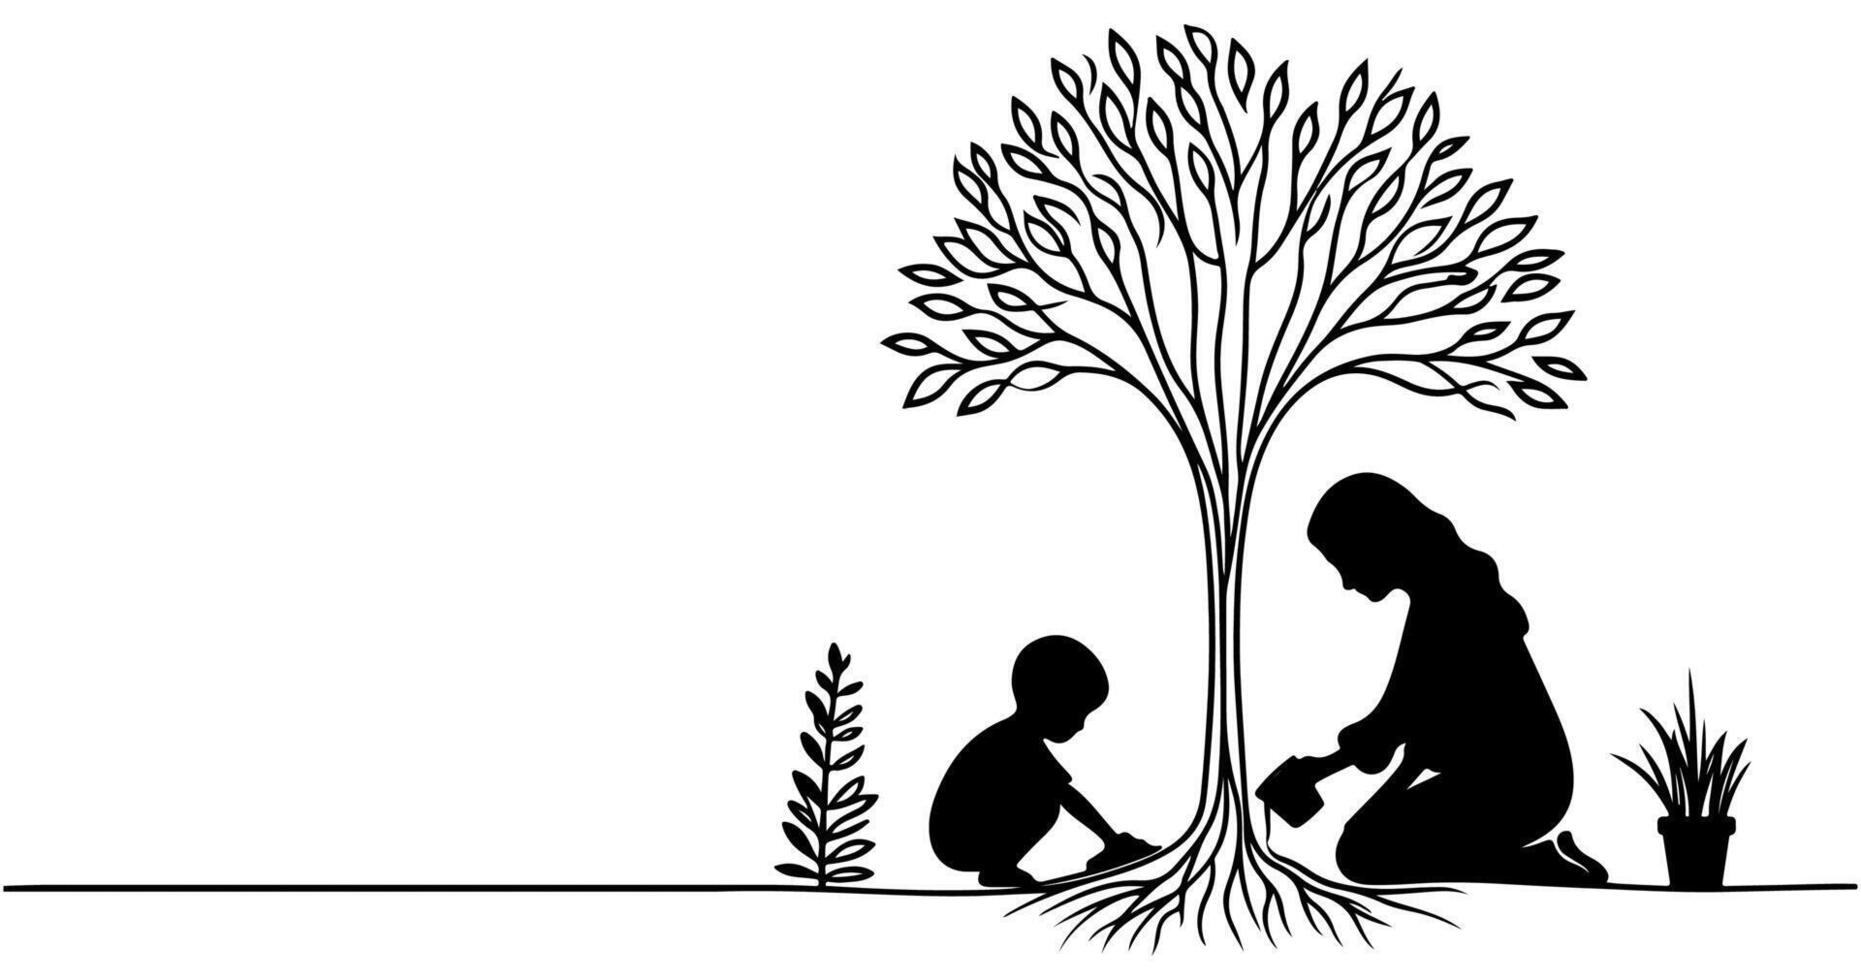 continuo uno nero linea arte disegno silhouette di bambini irrigazione un' albero. piantare albero per Salva il mondo e terra giorno ridurre globale riscaldamento crescita concetto vettore illustrazione su bianca sfondo